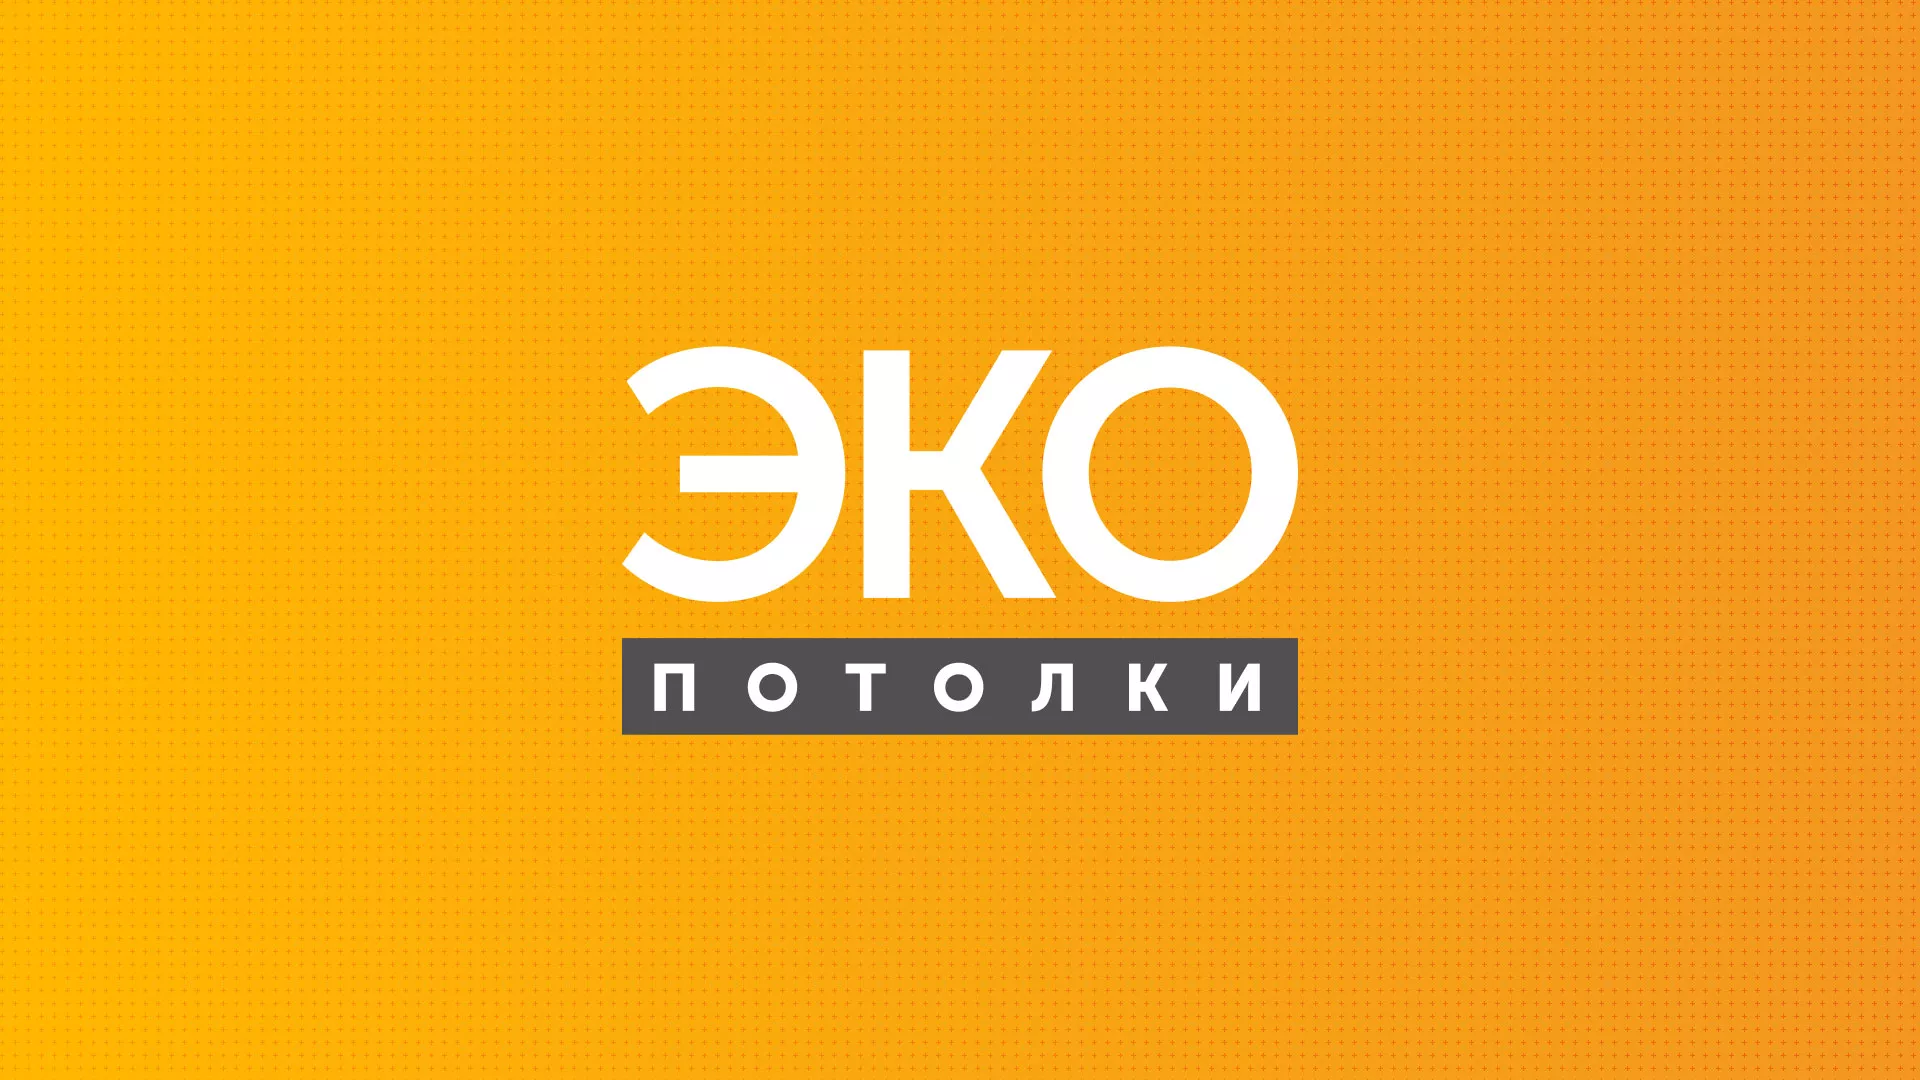 Разработка сайта по натяжным потолкам «Эко Потолки» в Димитровграде